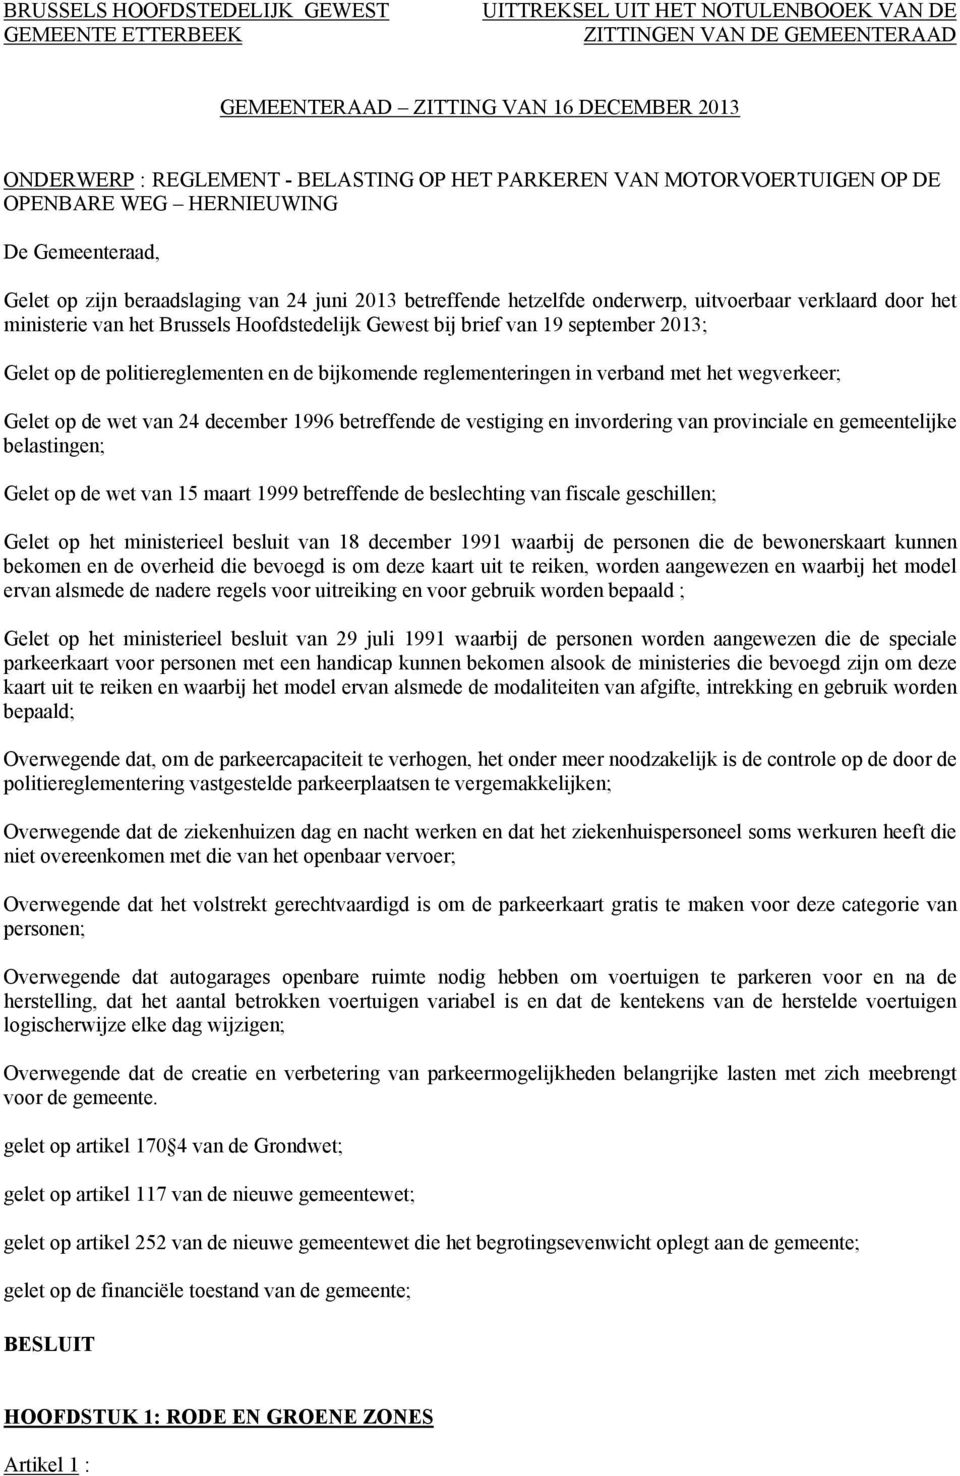 ministerie van het Brussels Hoofdstedelijk Gewest bij brief van 19 september 2013; Gelet op de politiereglementen en de bijkomende reglementeringen in verband met het wegverkeer; Gelet op de wet van